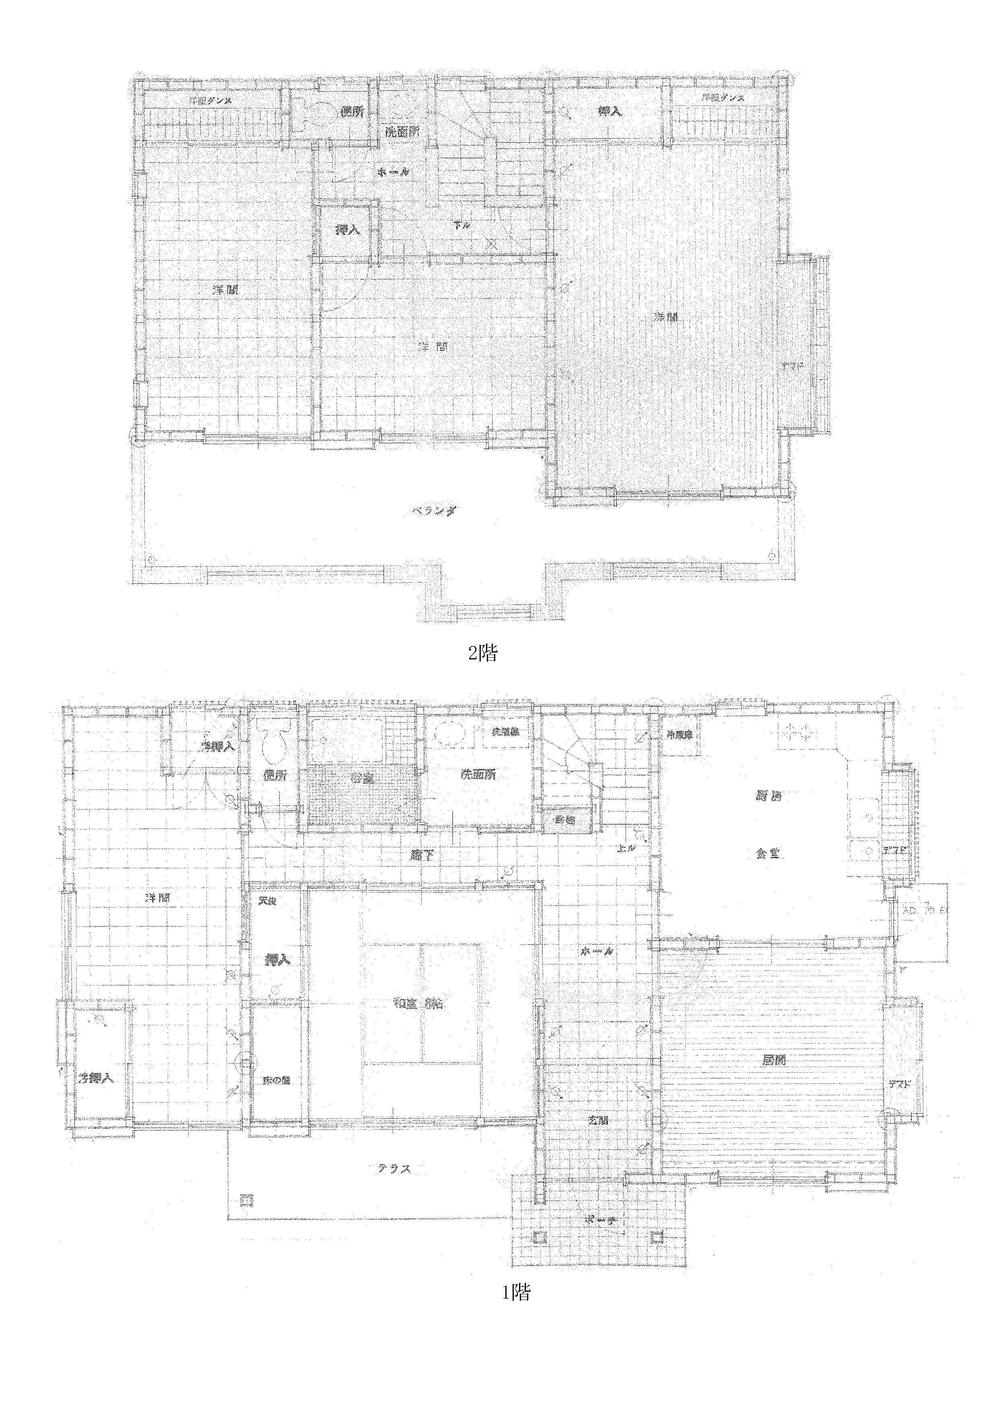 Floor plan. 19,800,000 yen, 6DK, Land area 365.56 sq m , Building area 144.08 sq m